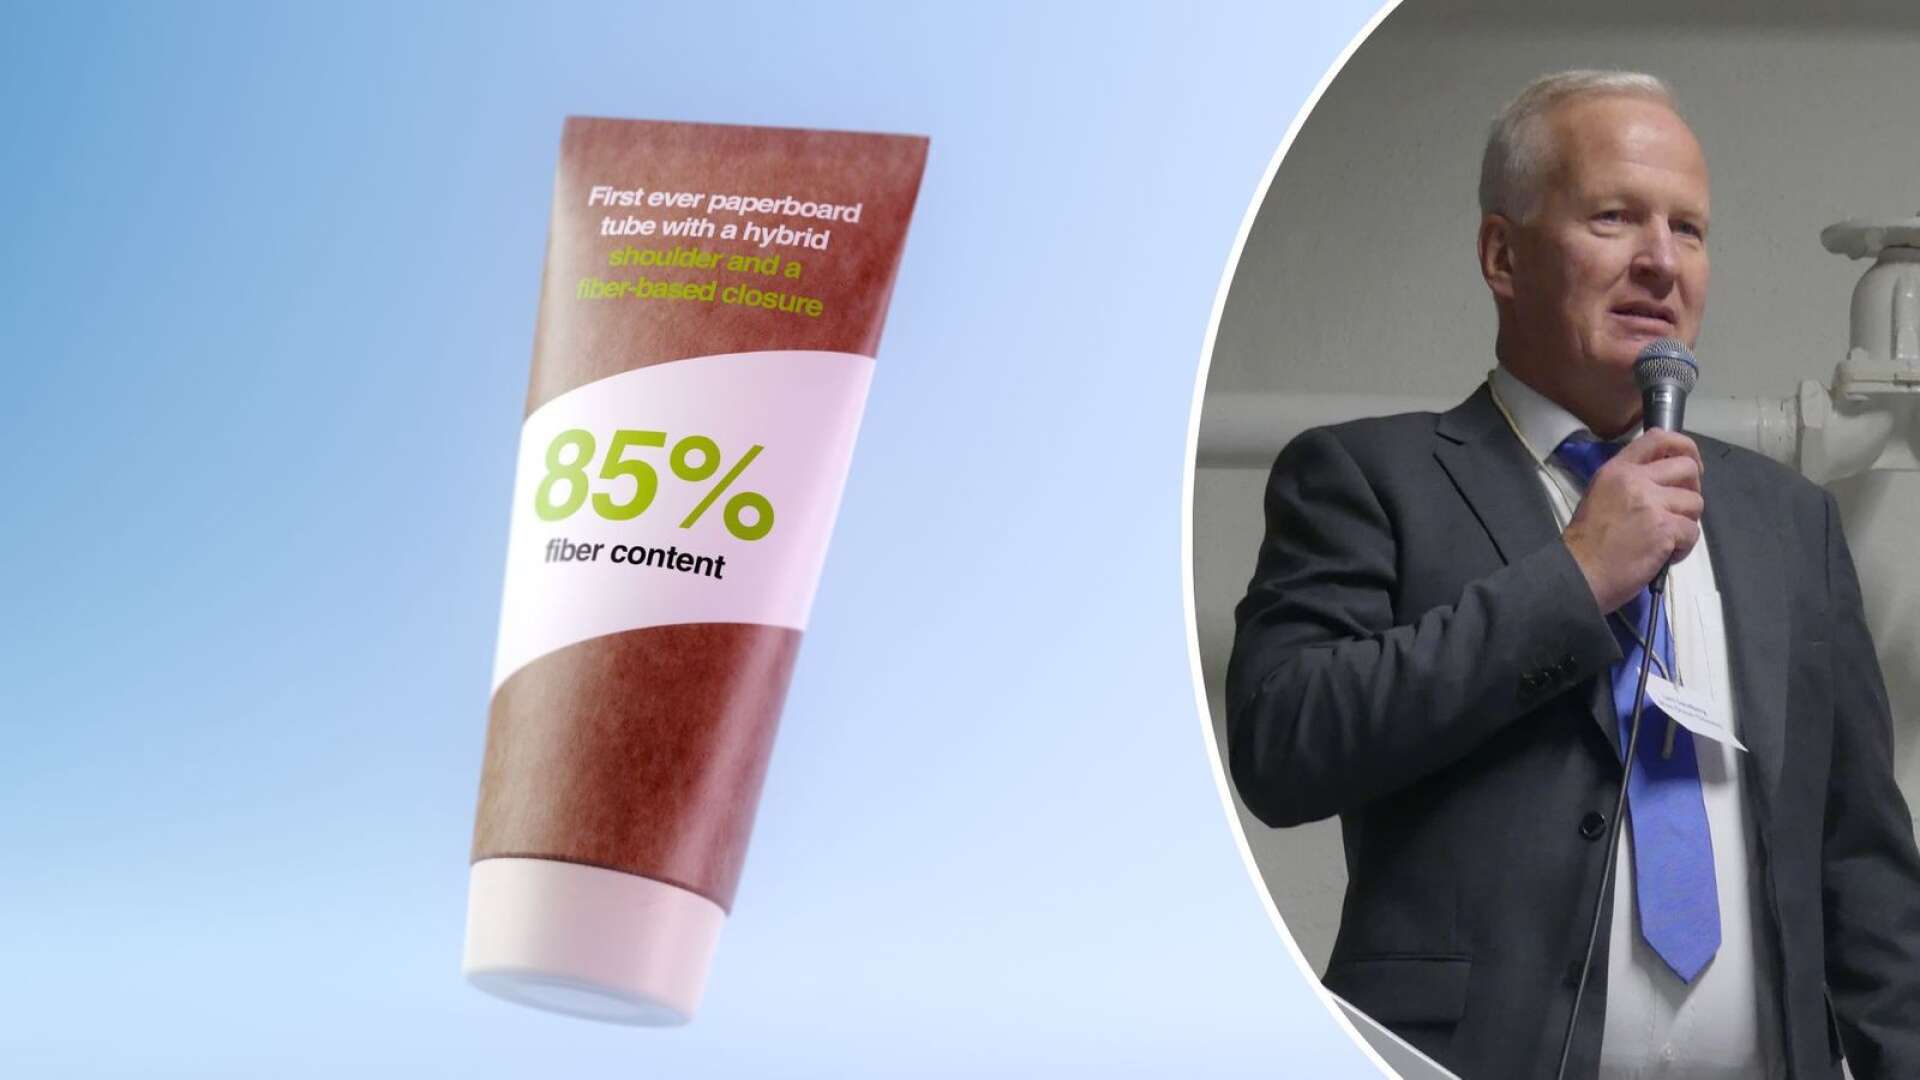 Företagets vd Lars Sandberg berättar att tuben har mer 85 procent fiberinnehåll.